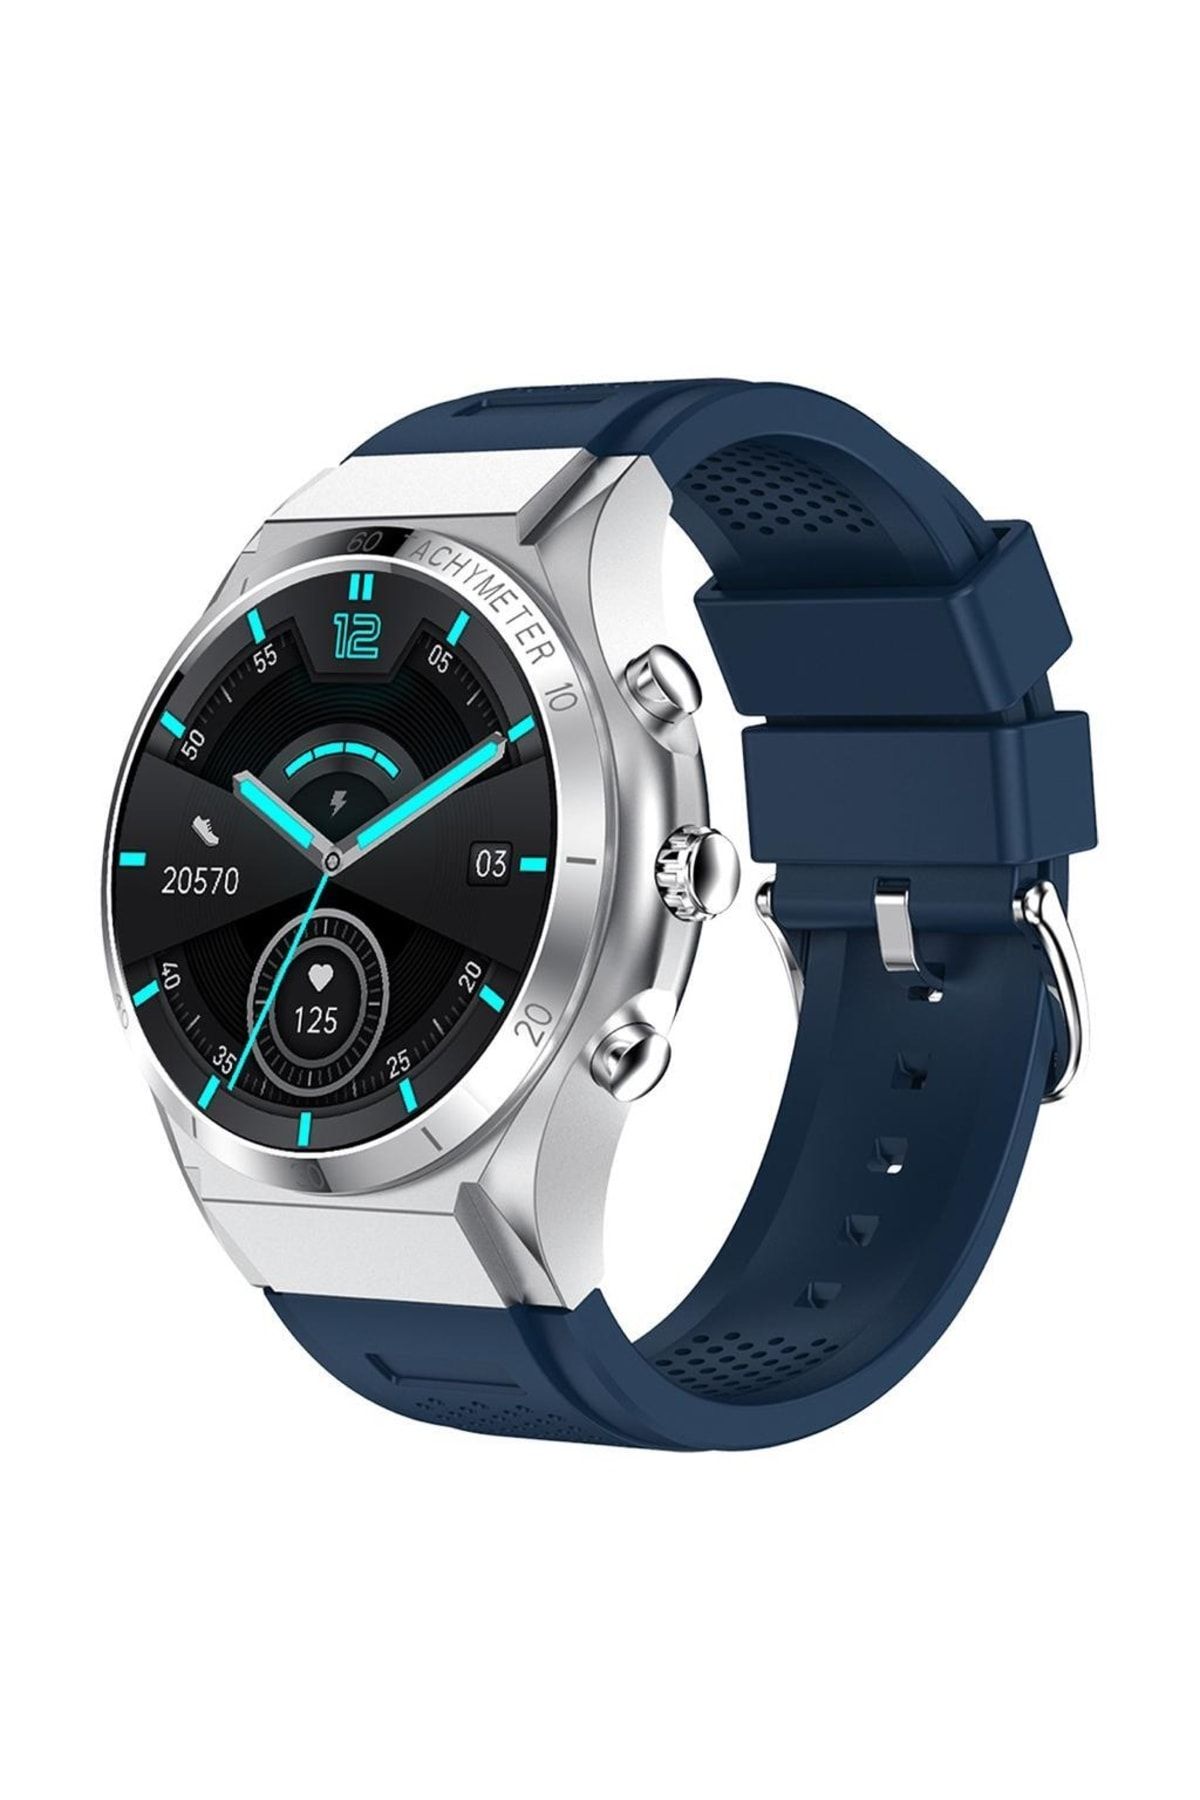 Reward Orijinal Rewatch Smart Watch Sesli Görüşme Özellikli Lacivert Akıllı Unisex Kol Saati